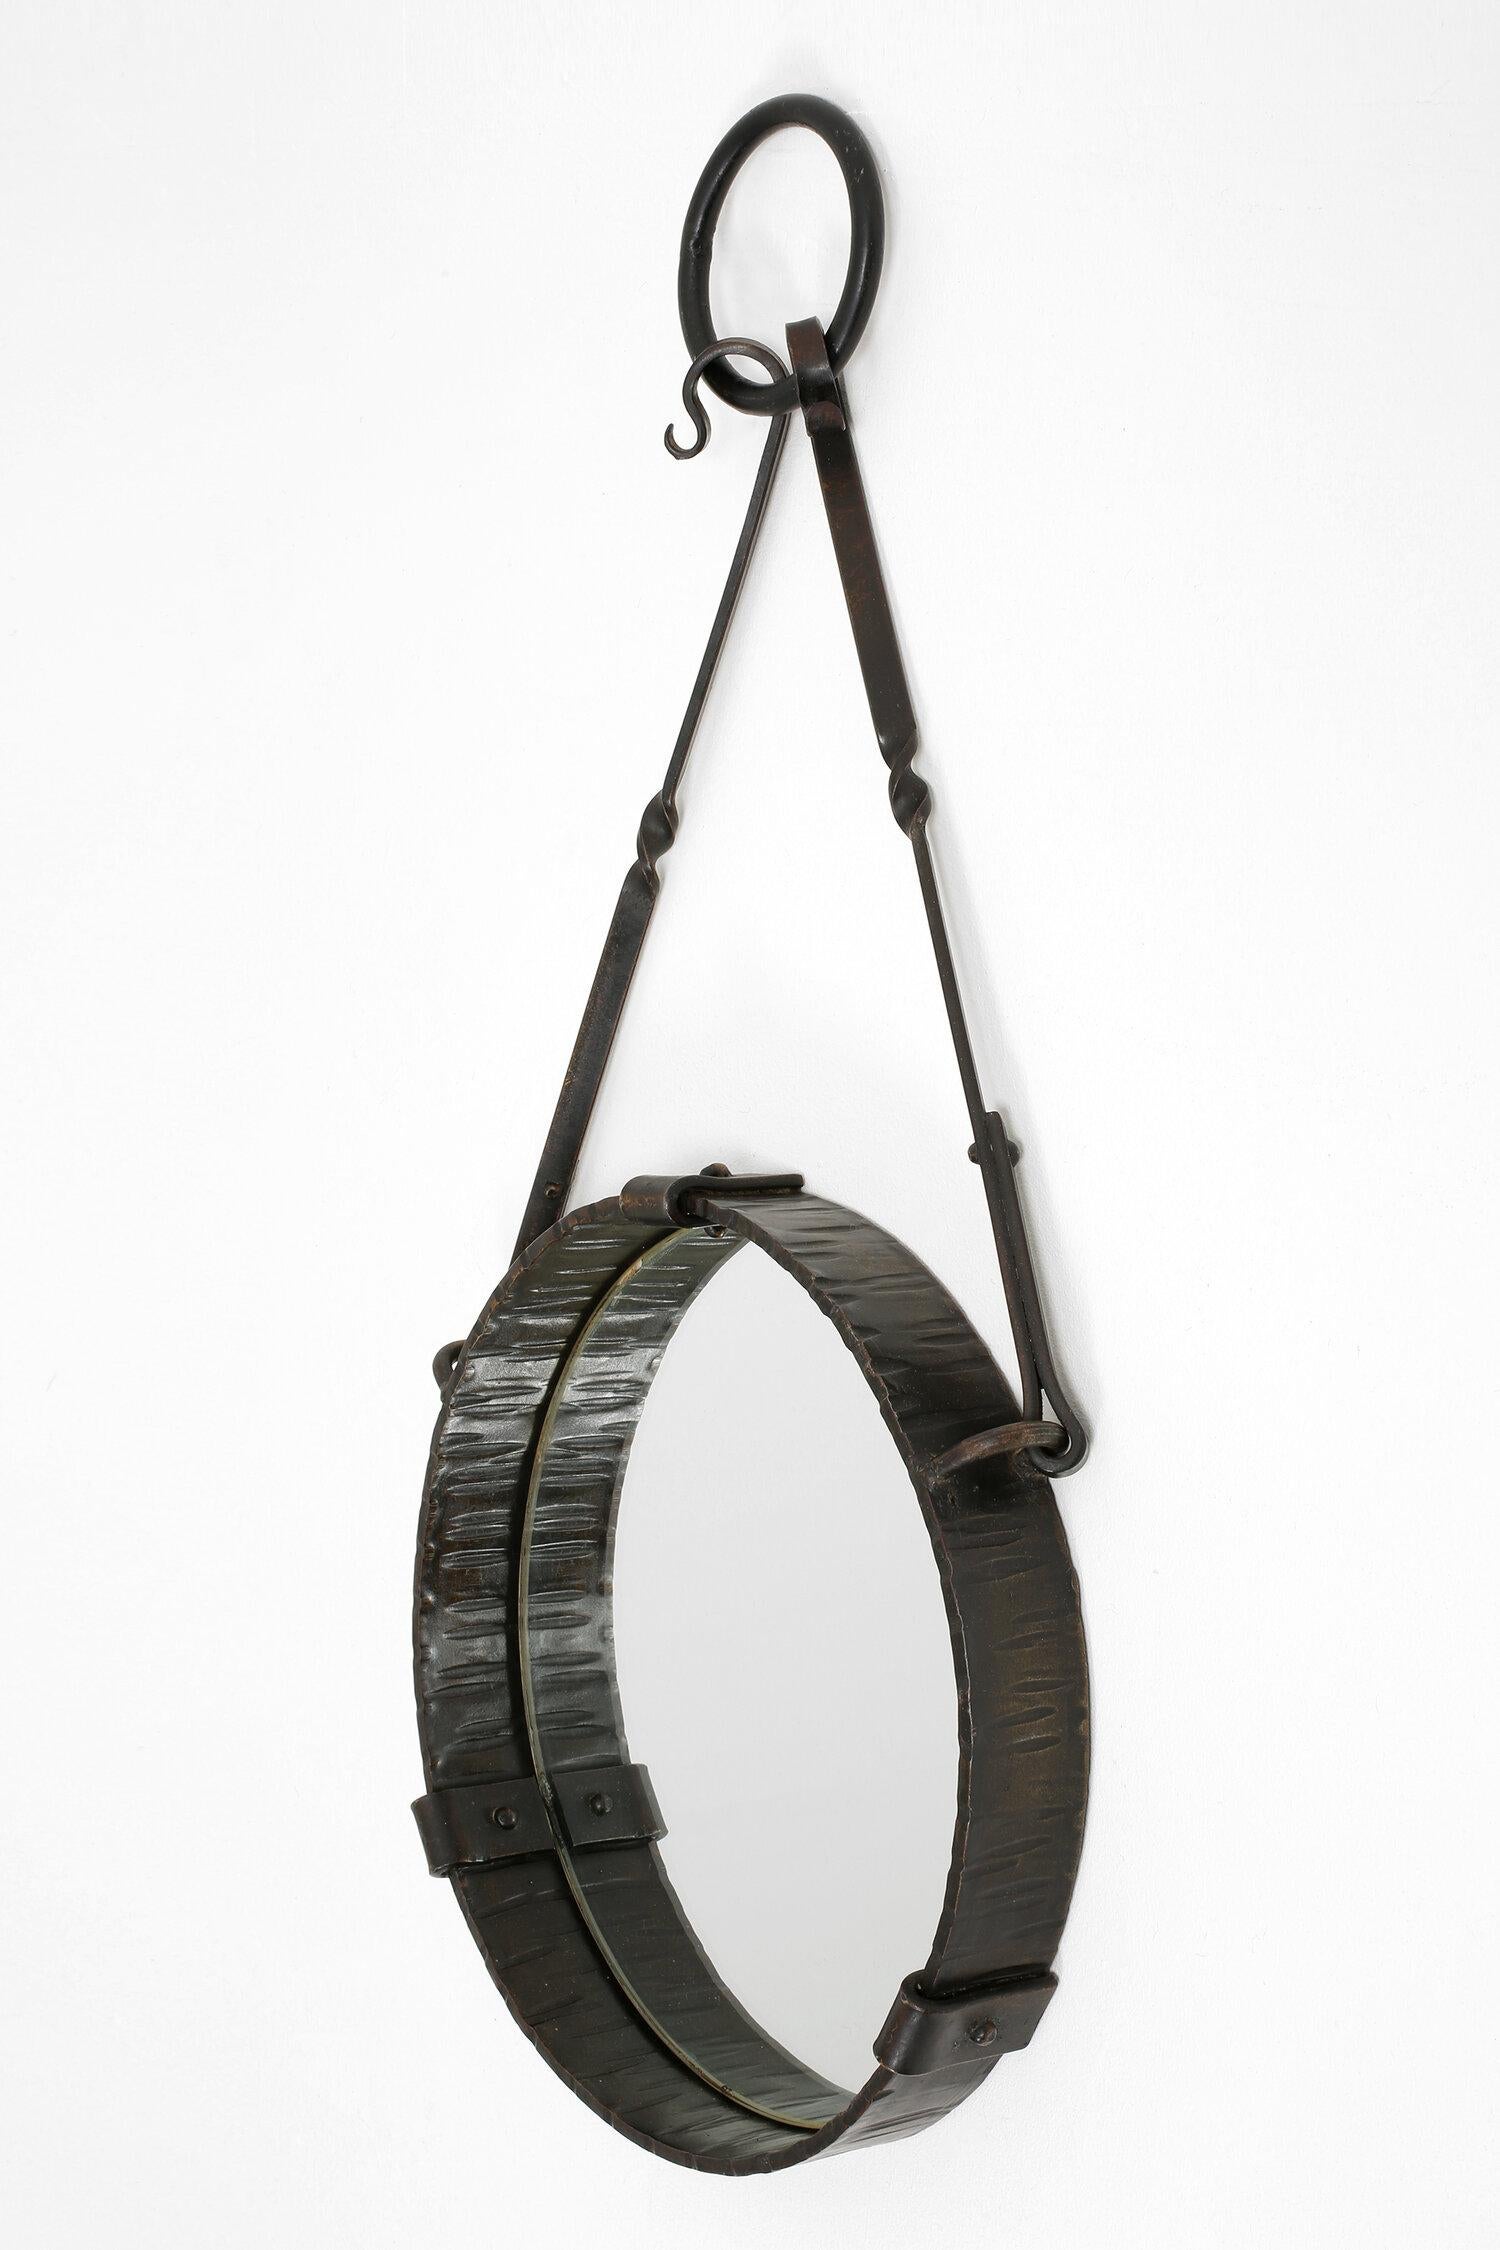 A wrought iron suspended circular mirror
France, circa 1940.